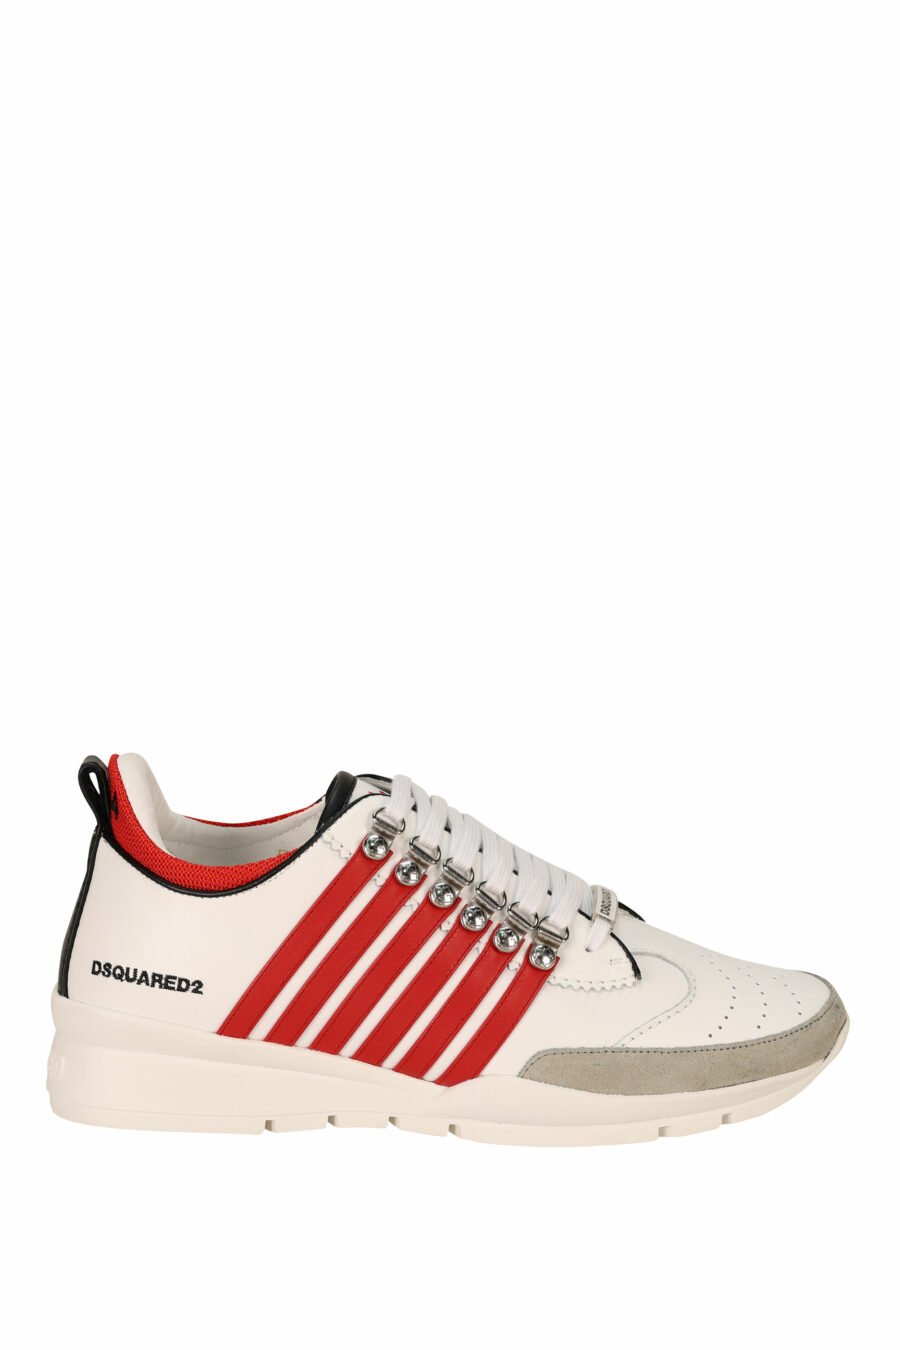 Zapatillas blancas con lineas rojas y suela blanca - 8055777300985